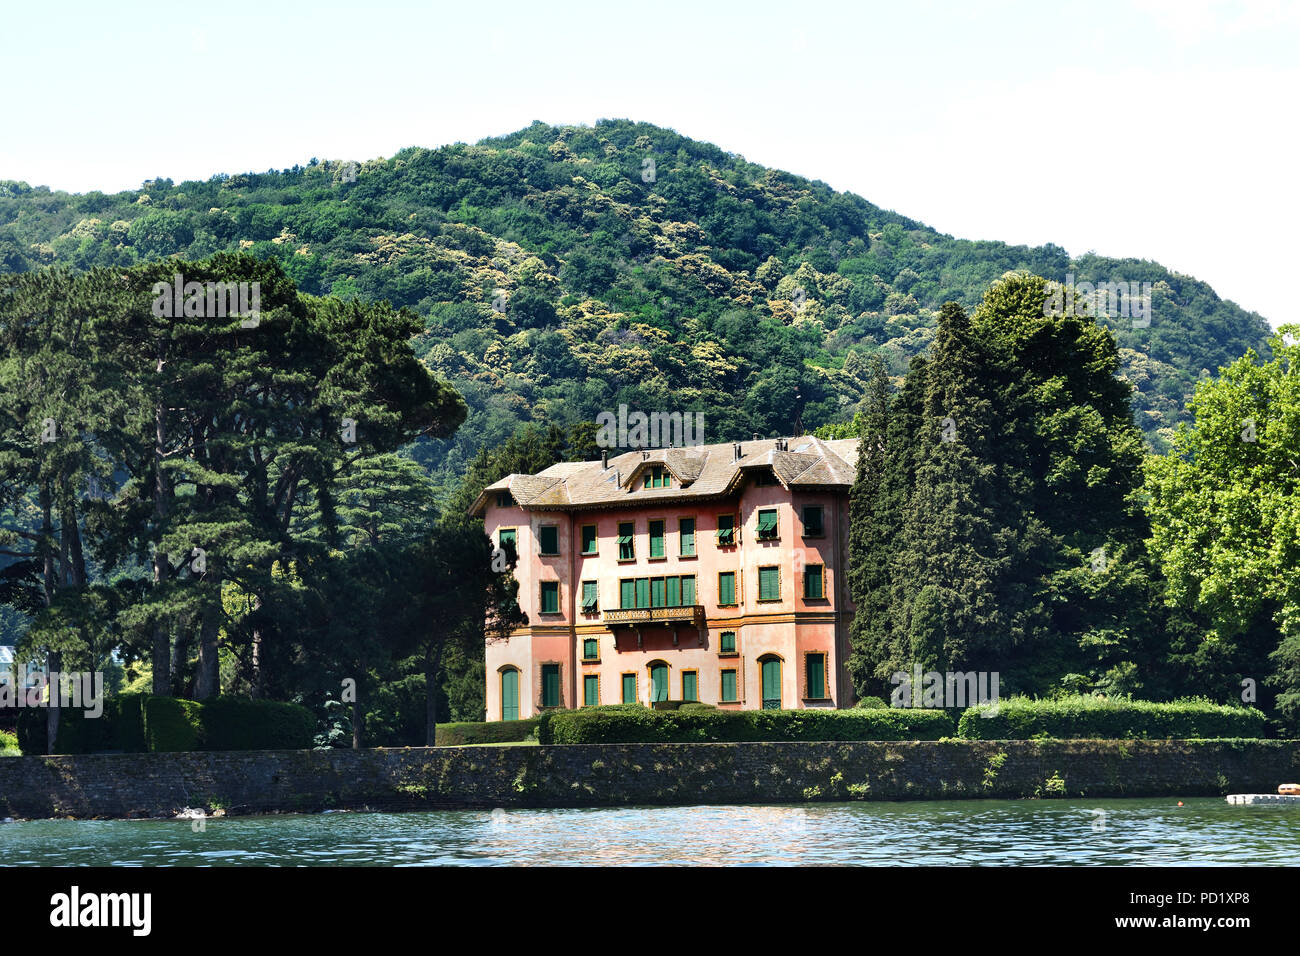 Blick auf Villa Dozzio in Cernobbio Lago di Como (Comer See) ist ein See von glazialen Ursprungs in der Lombardei Italien Italienisch. Stockfoto